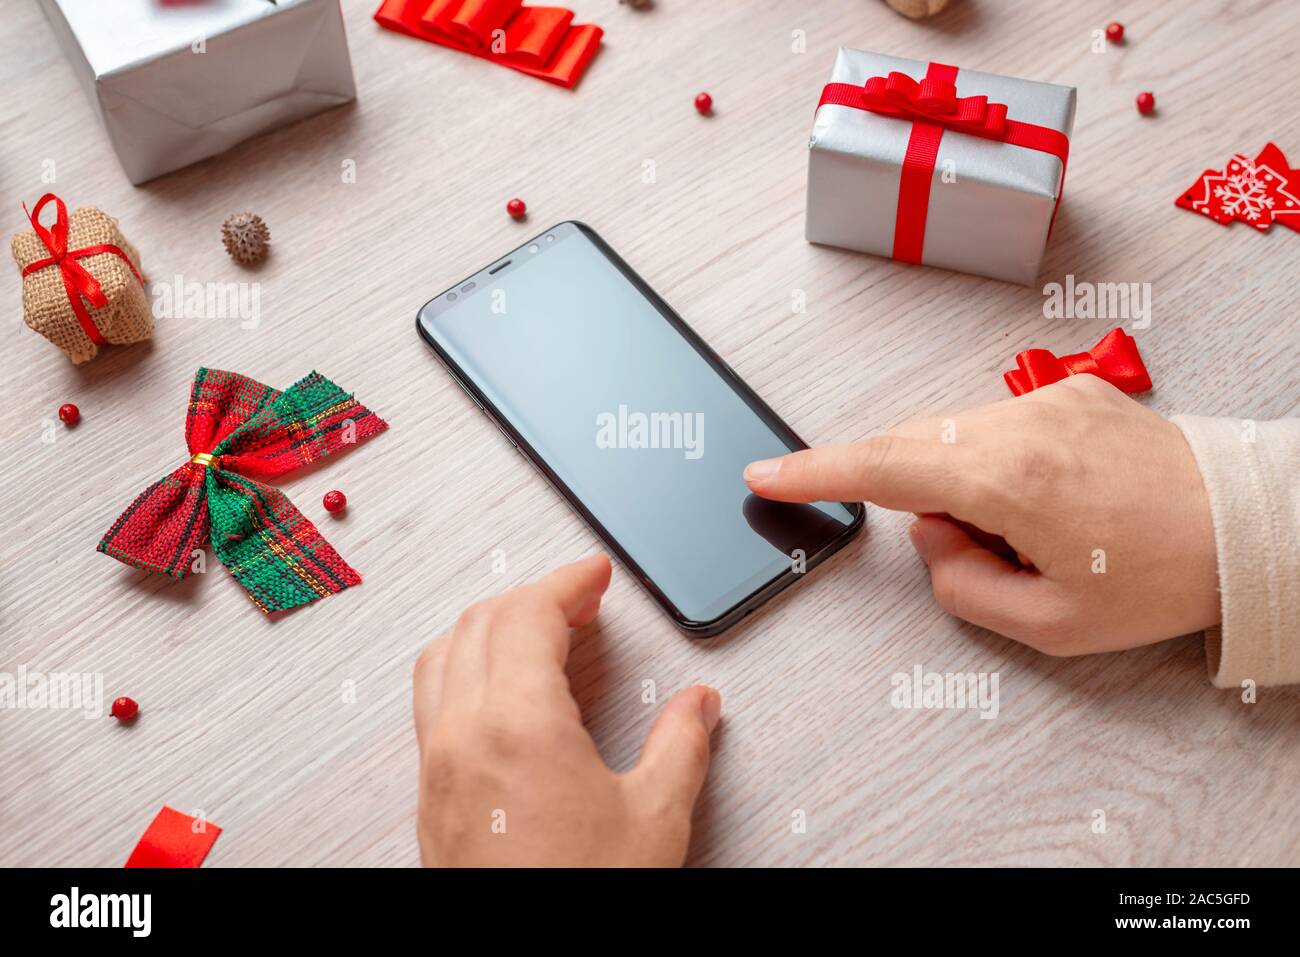 Maqueta de teléfono rodeado de adornos navideños y regalos sobre la mesa de madera. Chica en blanco pantalla táctil del teléfono. Foto de stock